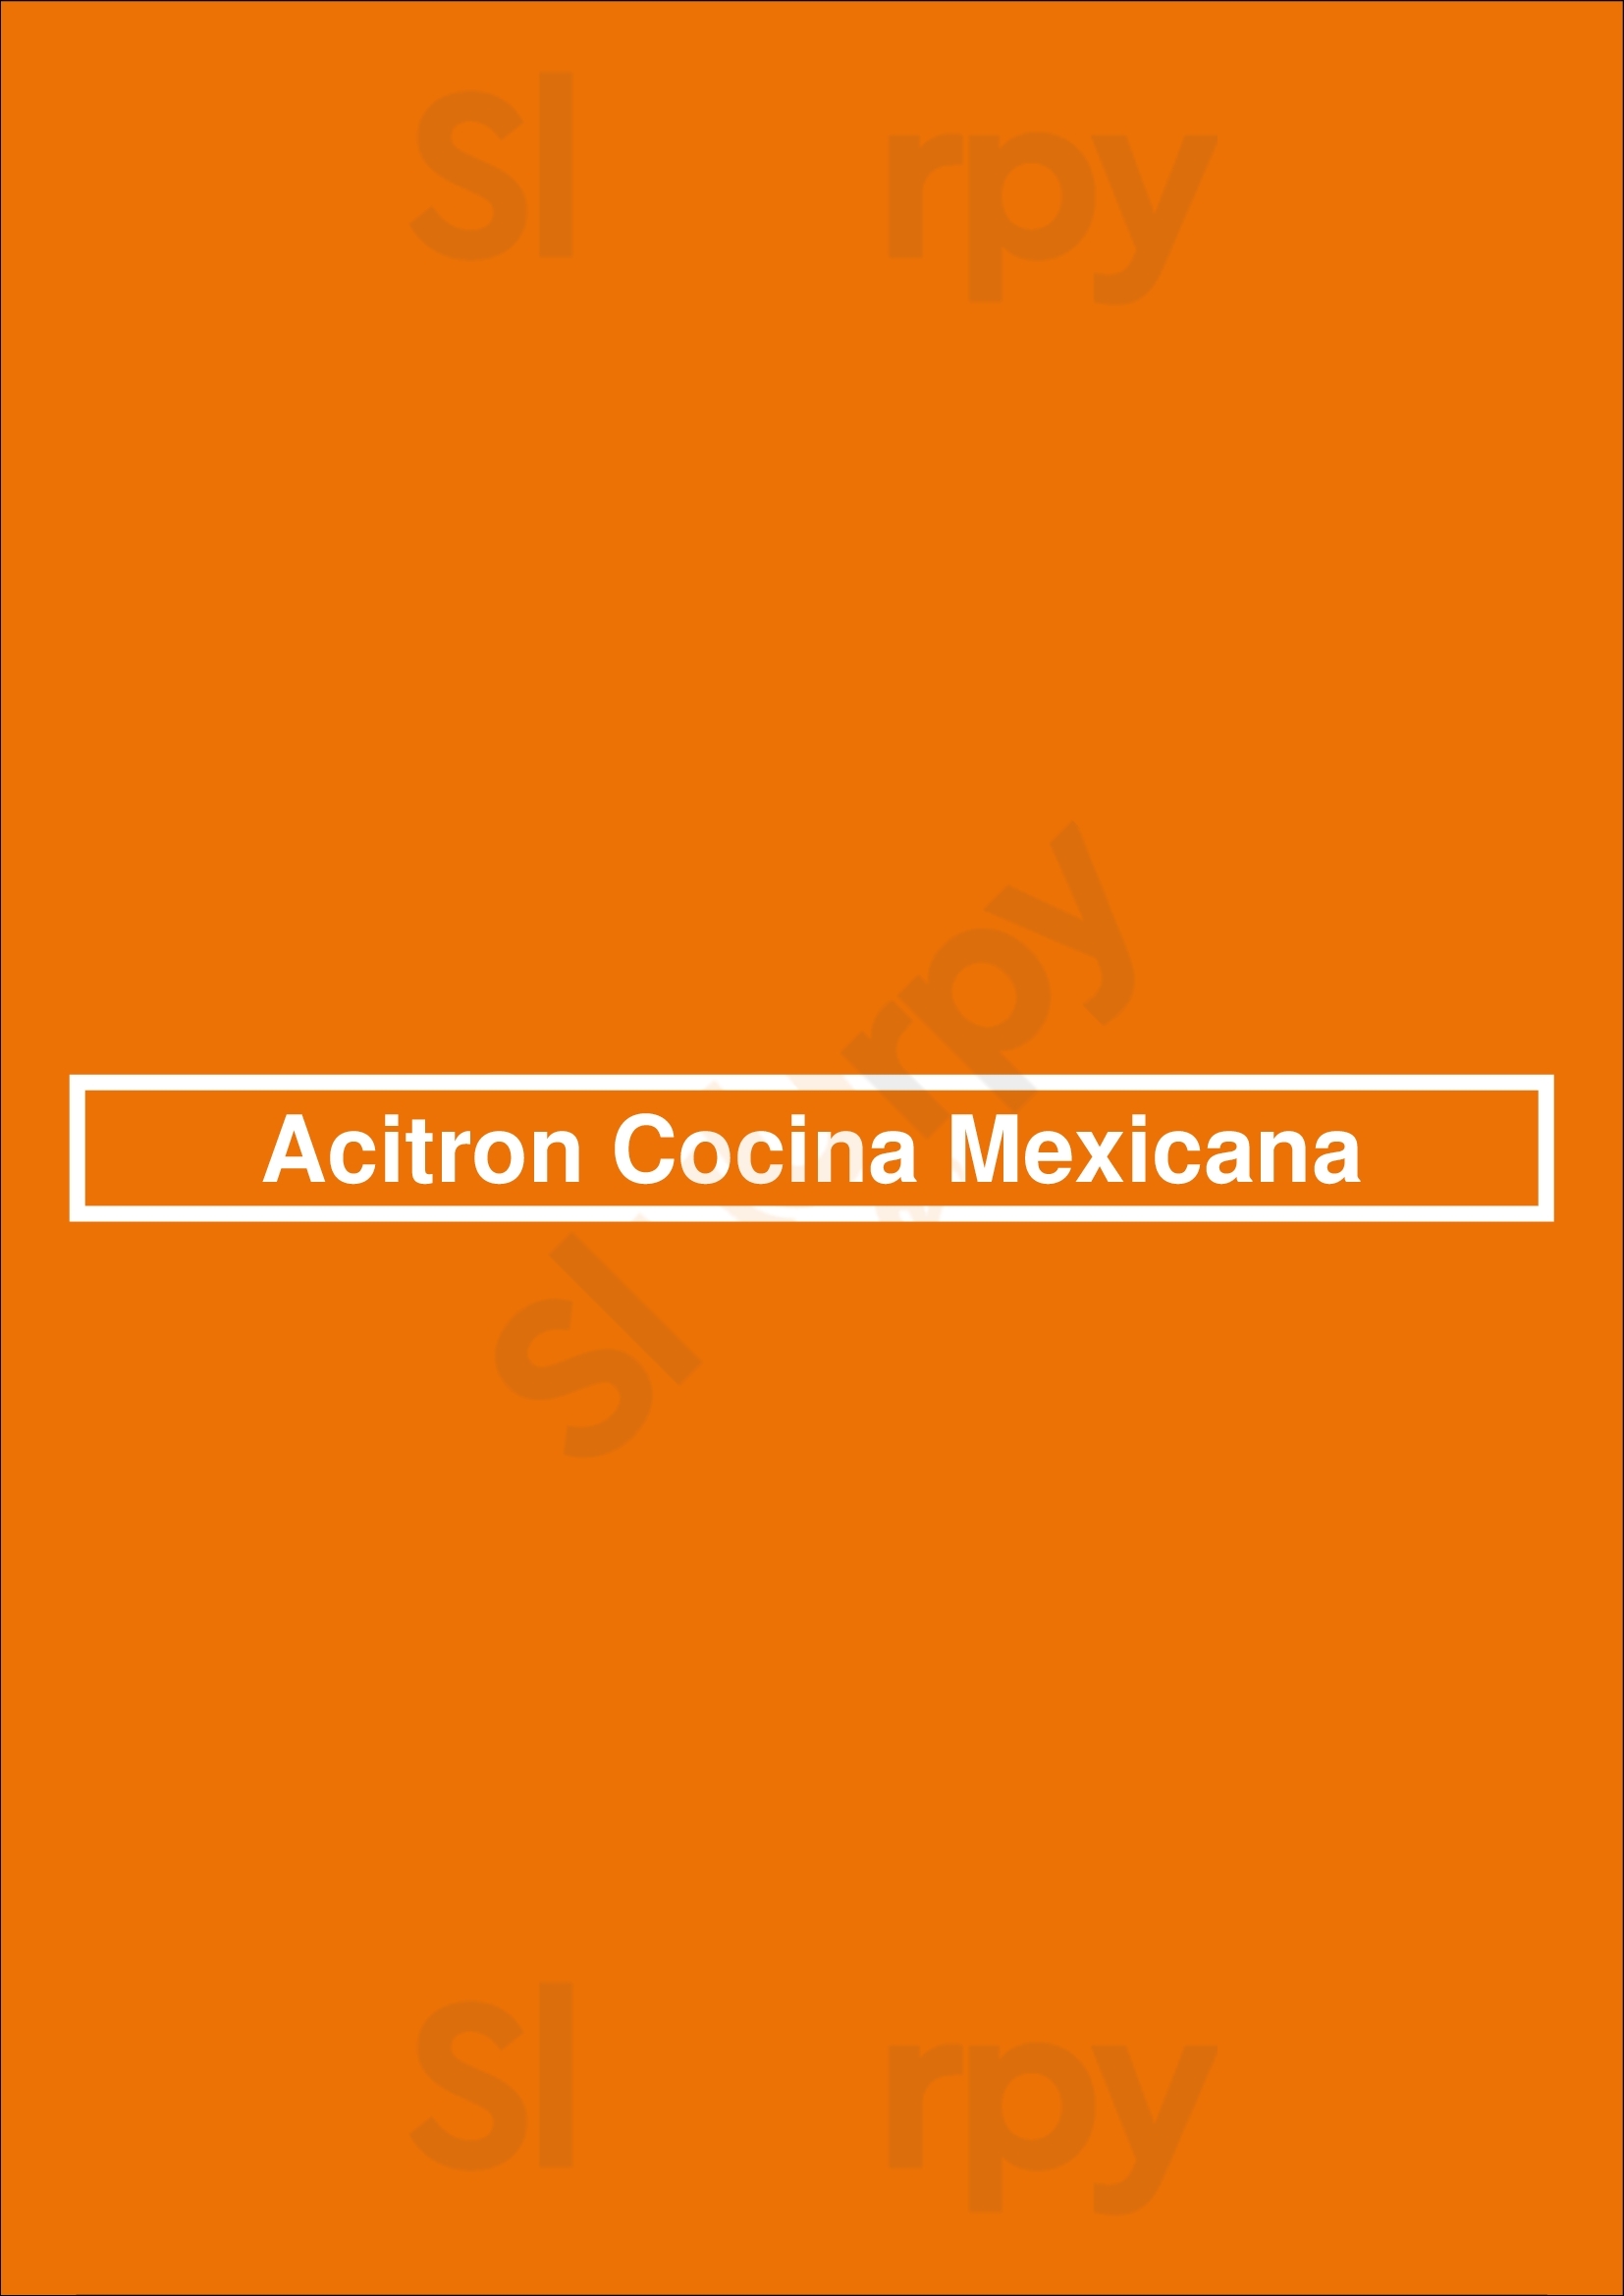 Acitron Cocina Mexicana Arlington Menu - 1